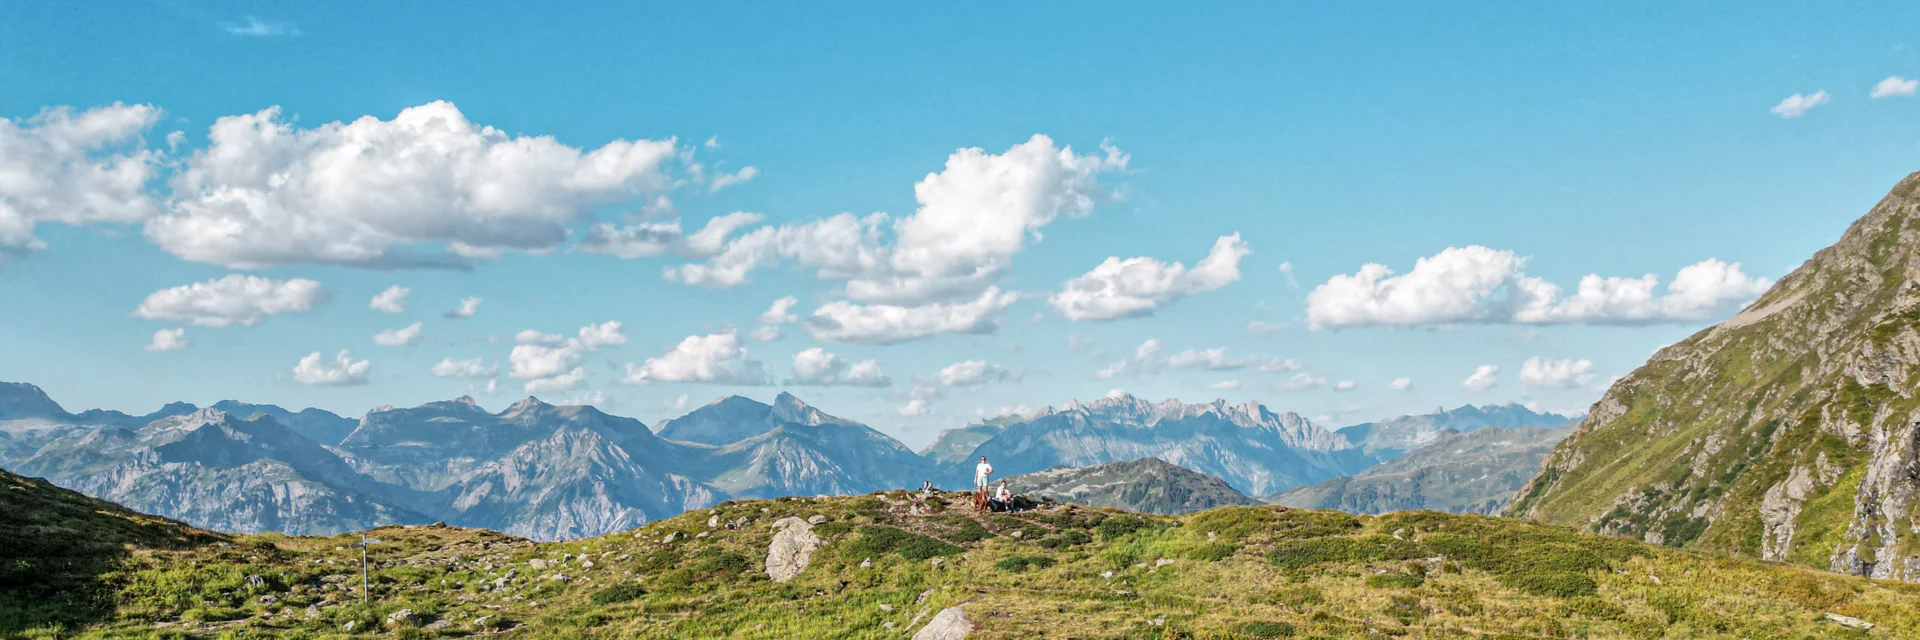 Ein Bergsee im Sommer mit zwei Personen in Hintergrund. | © Silvretta Montafon - Vanessa Strauch